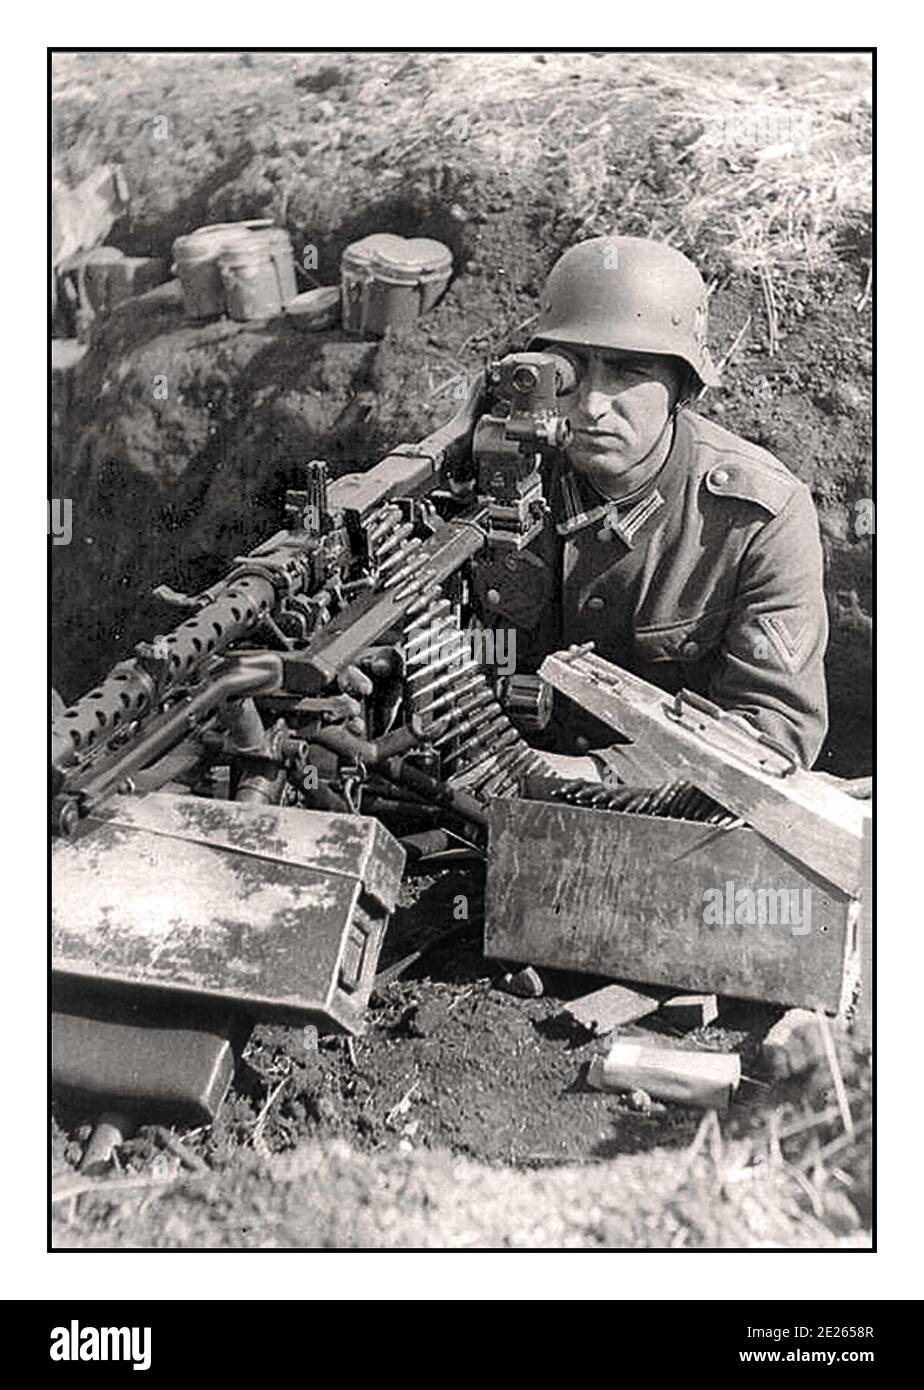 WW2 Propaganda immagine Wehrmacht esercito soldato nazista in trincea dugout con MG-42 macchina pistola con vista ottica, munizioni scatole vicino a mano Foto Stock